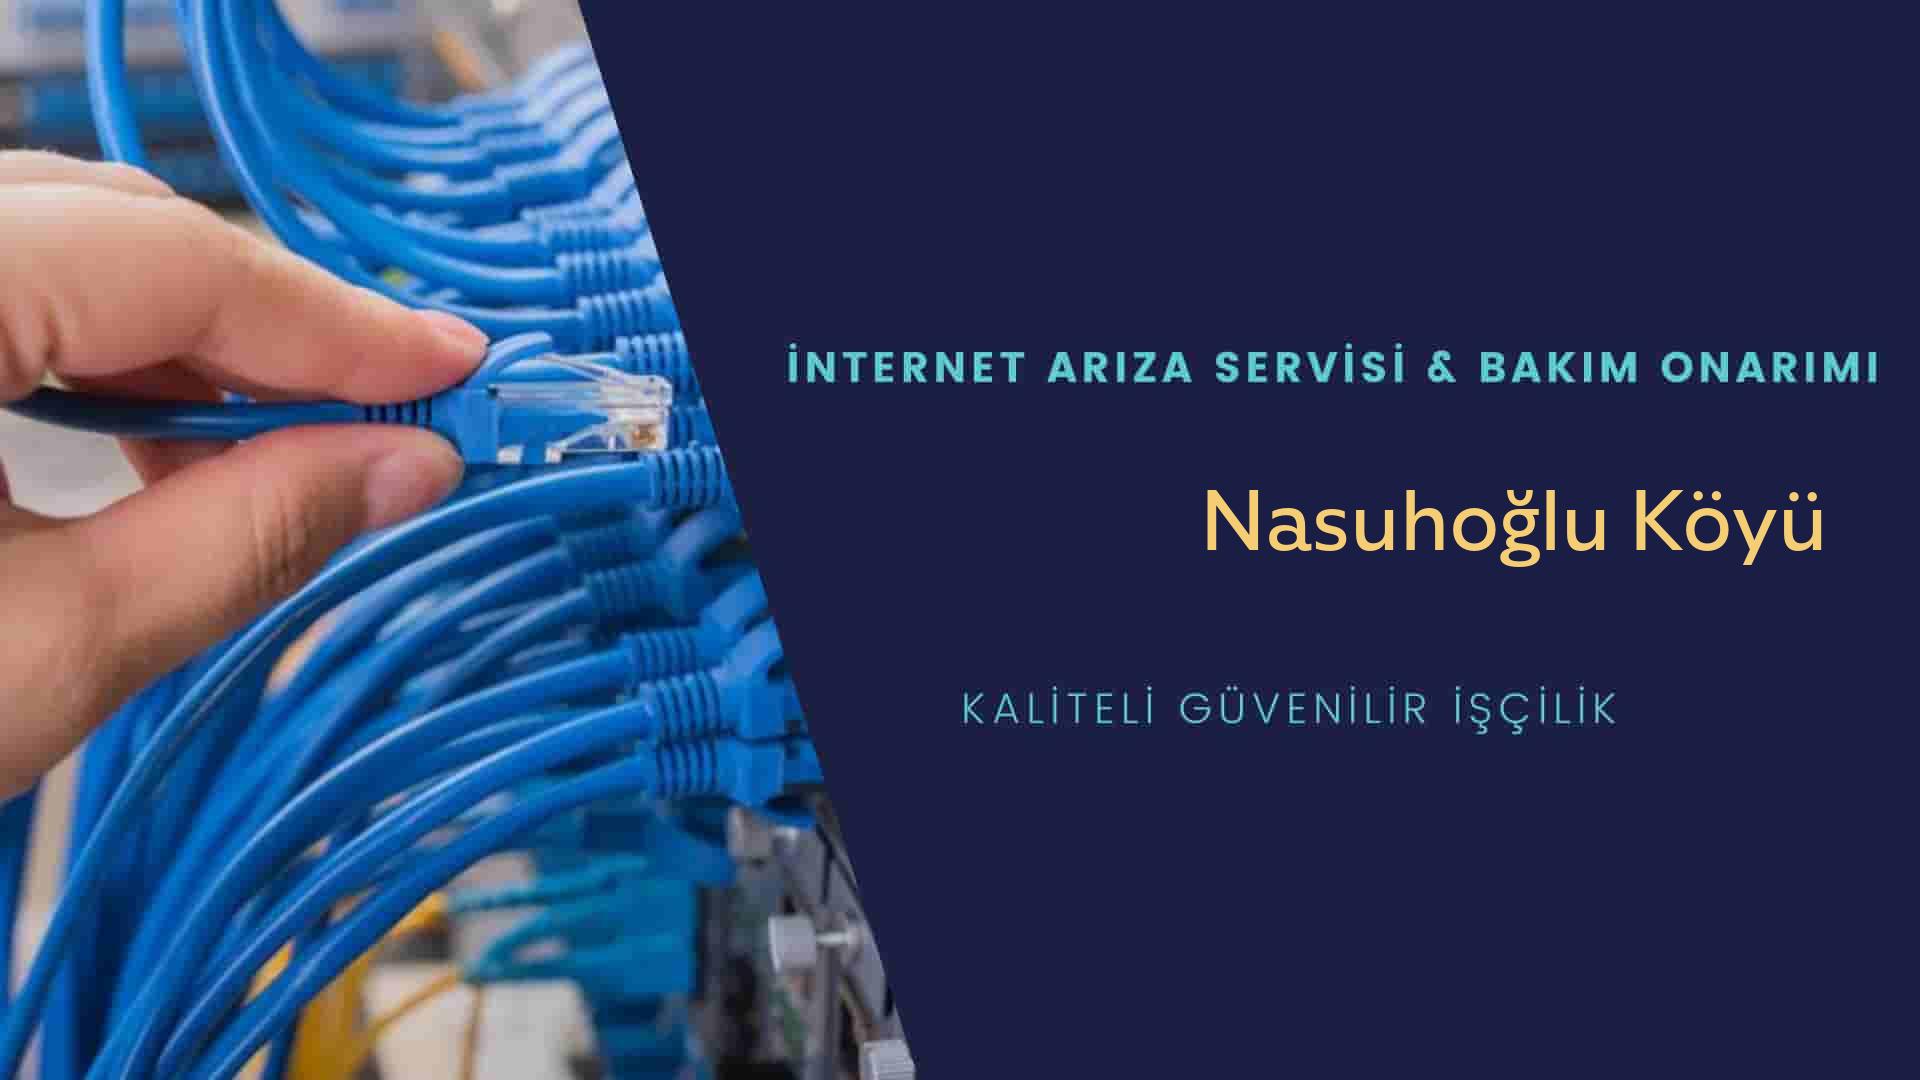 Nasuhoğlu Köyü internet kablosu çekimi yapan yerler veya elektrikçiler mi? arıyorsunuz doğru yerdesiniz o zaman sizlere 7/24 yardımcı olacak profesyonel ustalarımız bir telefon kadar yakındır size.